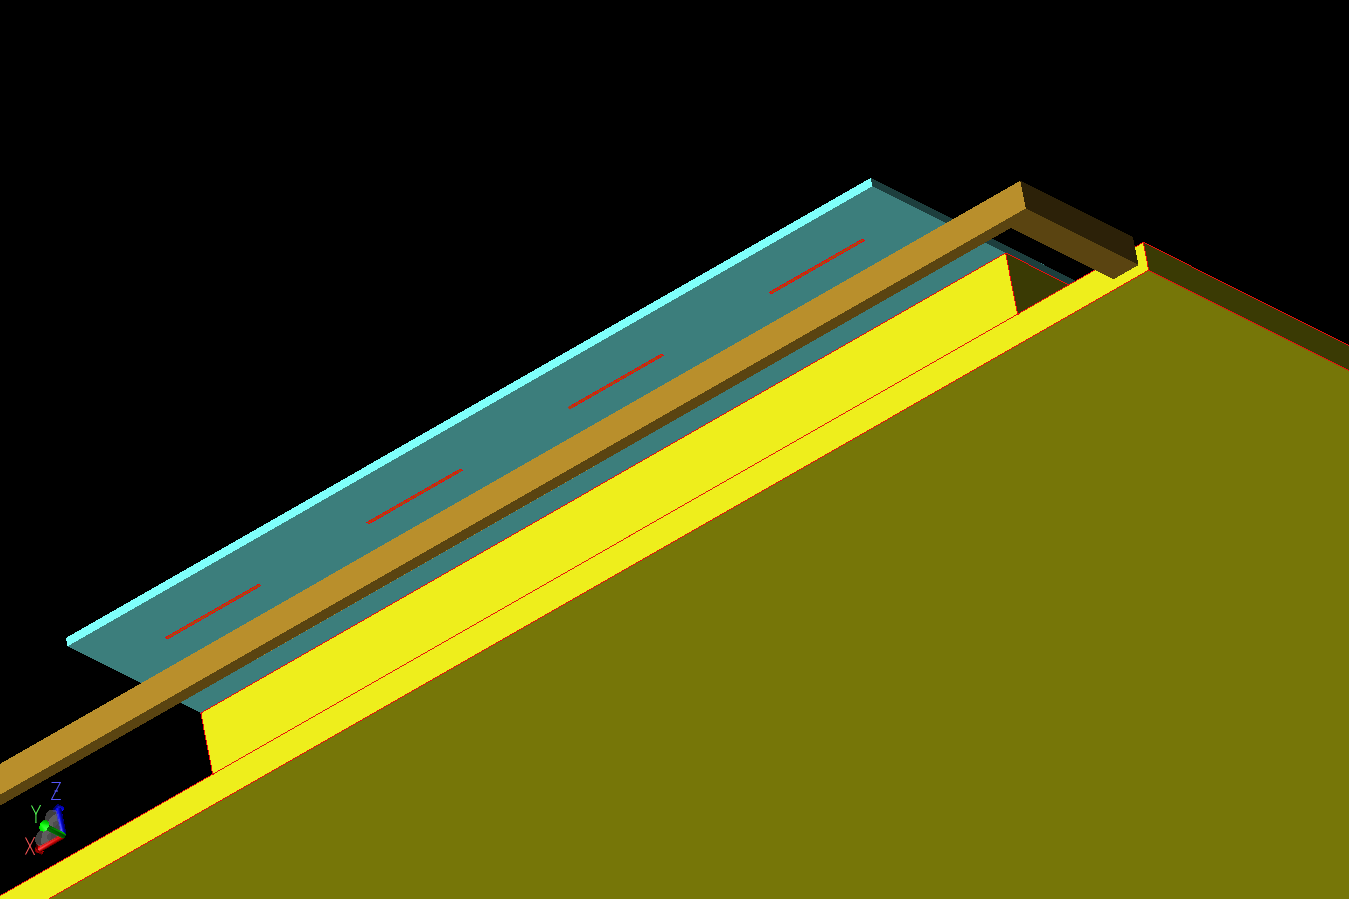 图 3：天线阵列的底视图显示了 4G 和 5G 元件与基底背面的分离情况。